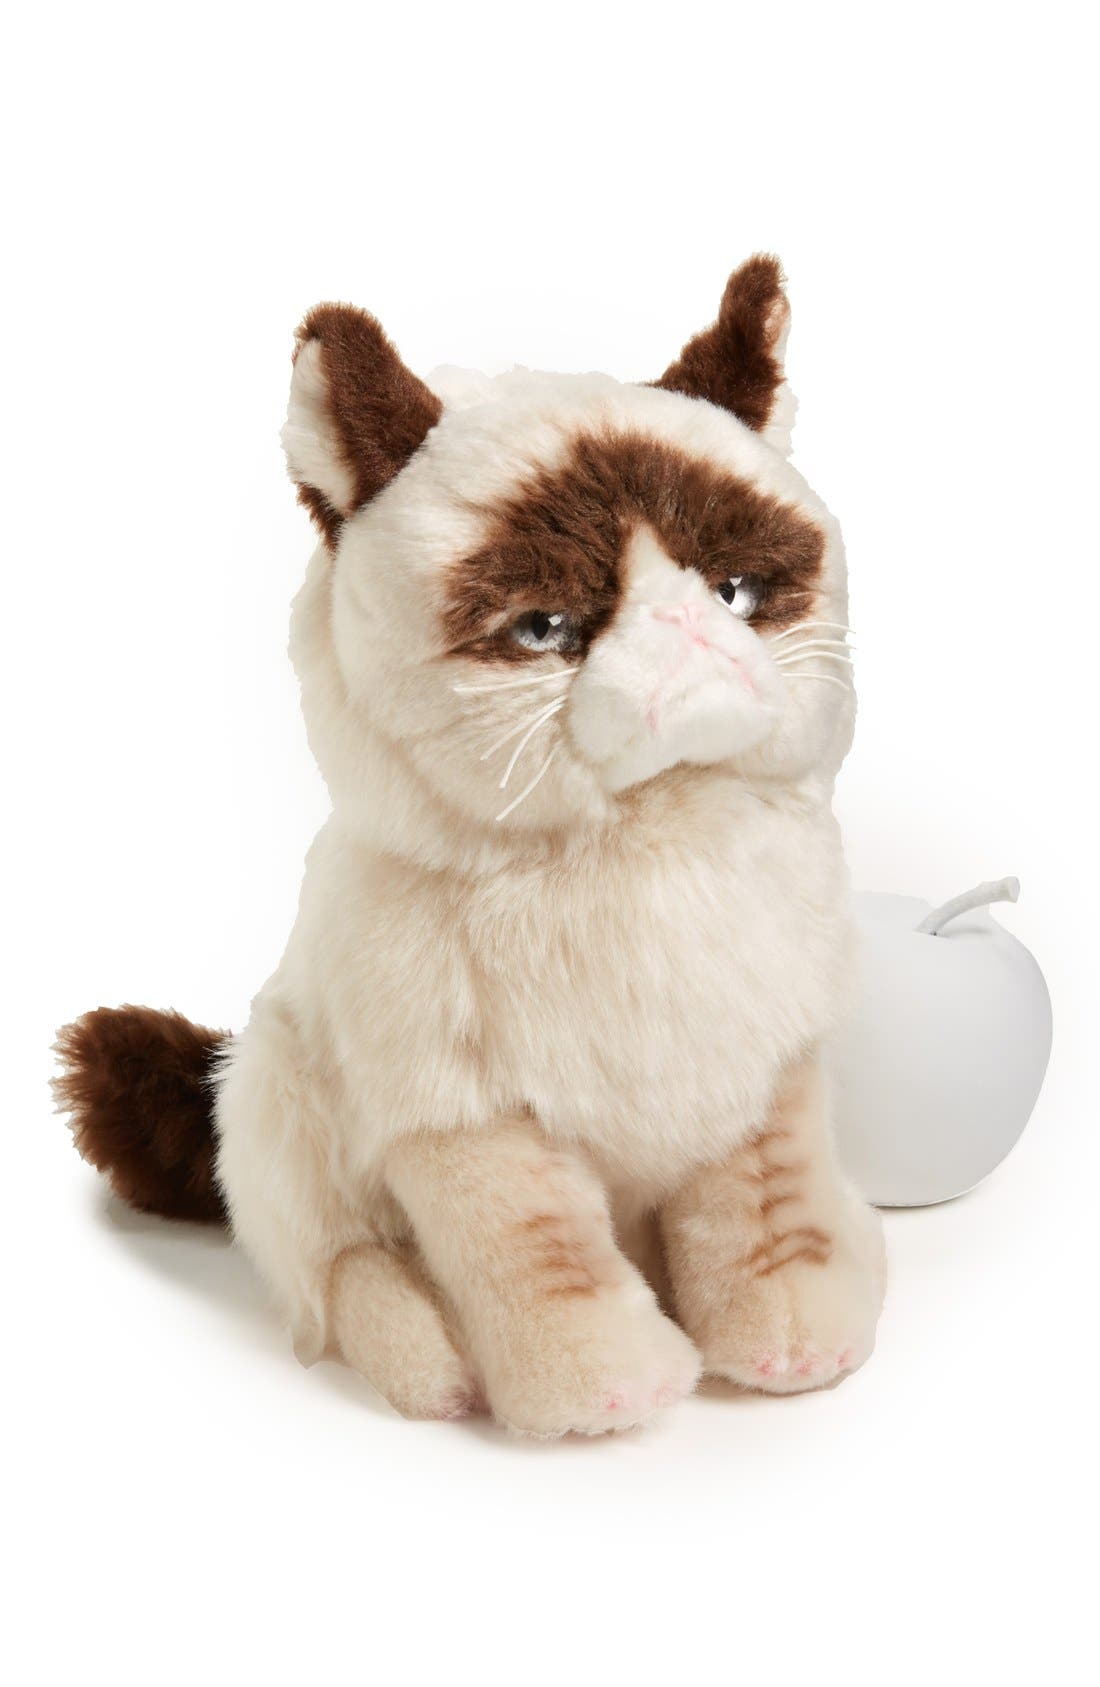 grumpy cat plush toy